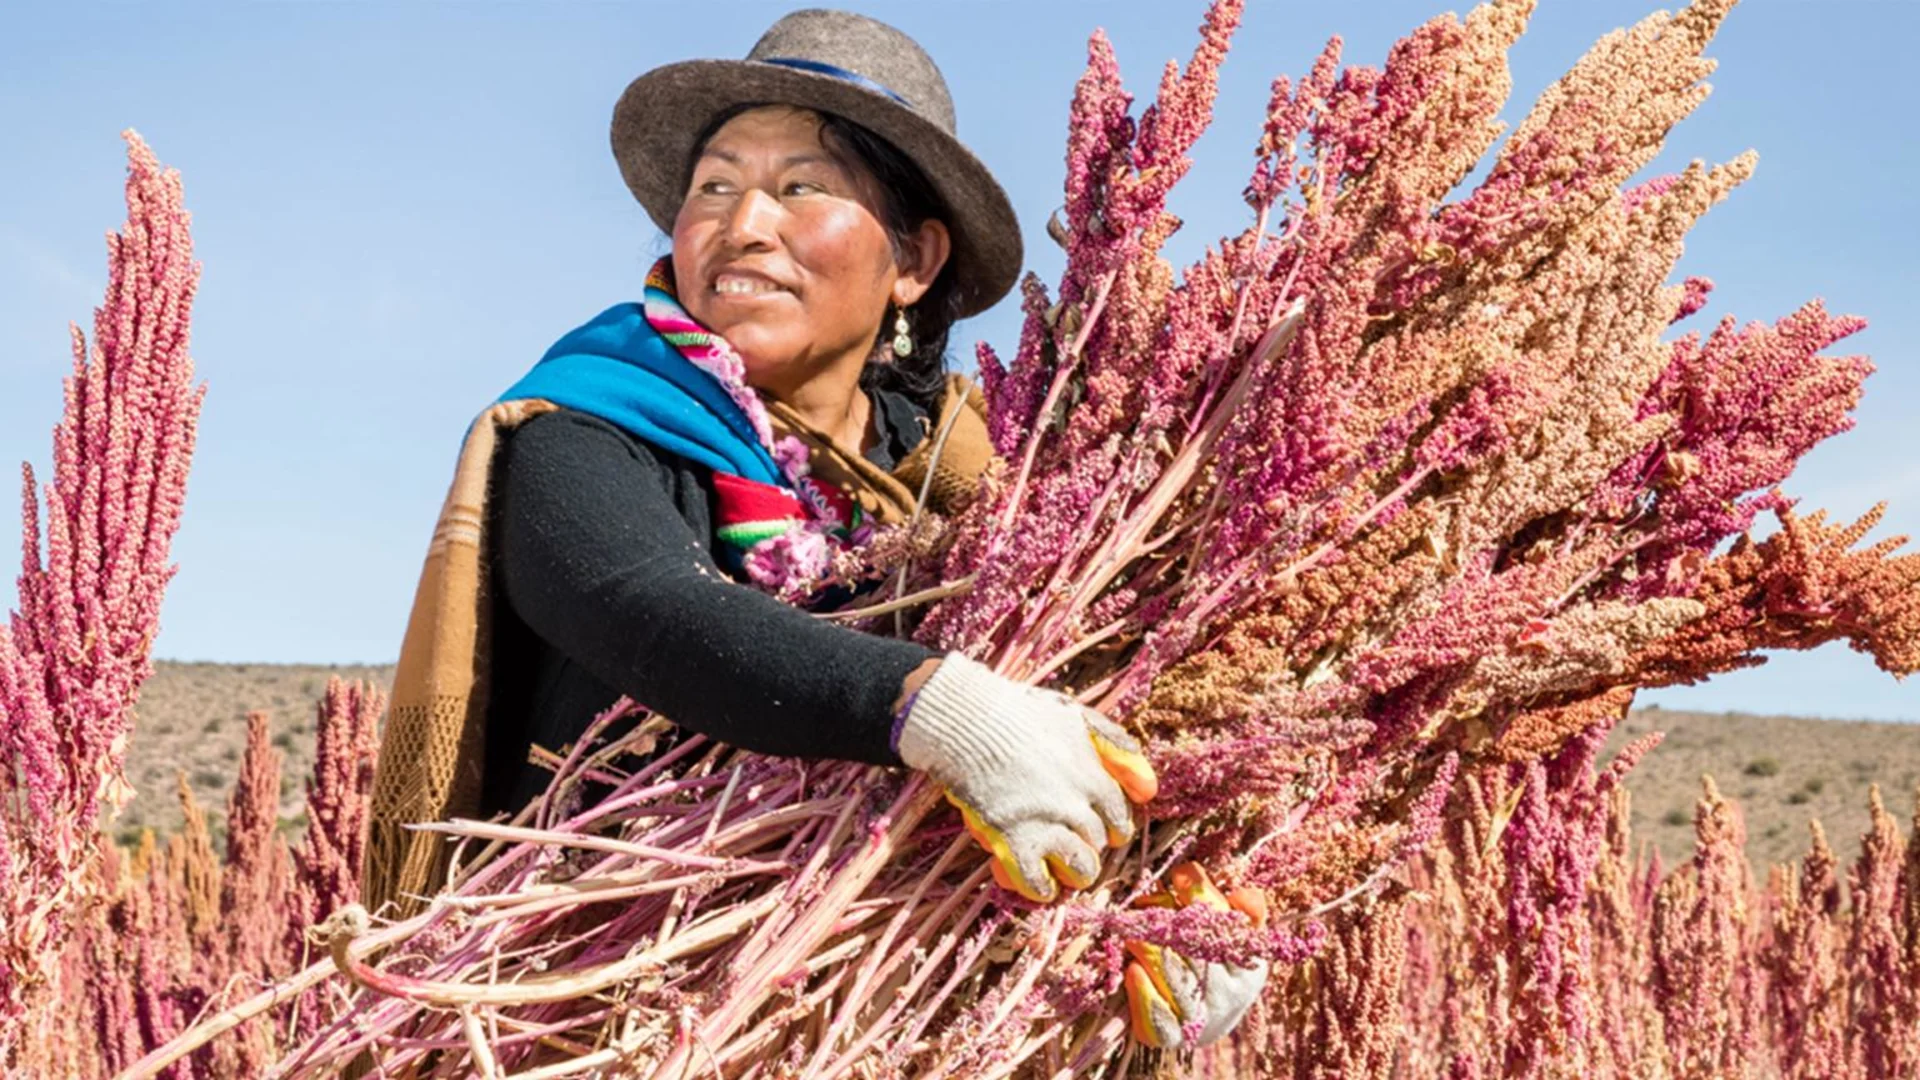 Una donna sudamericana raccoglie la quinoa